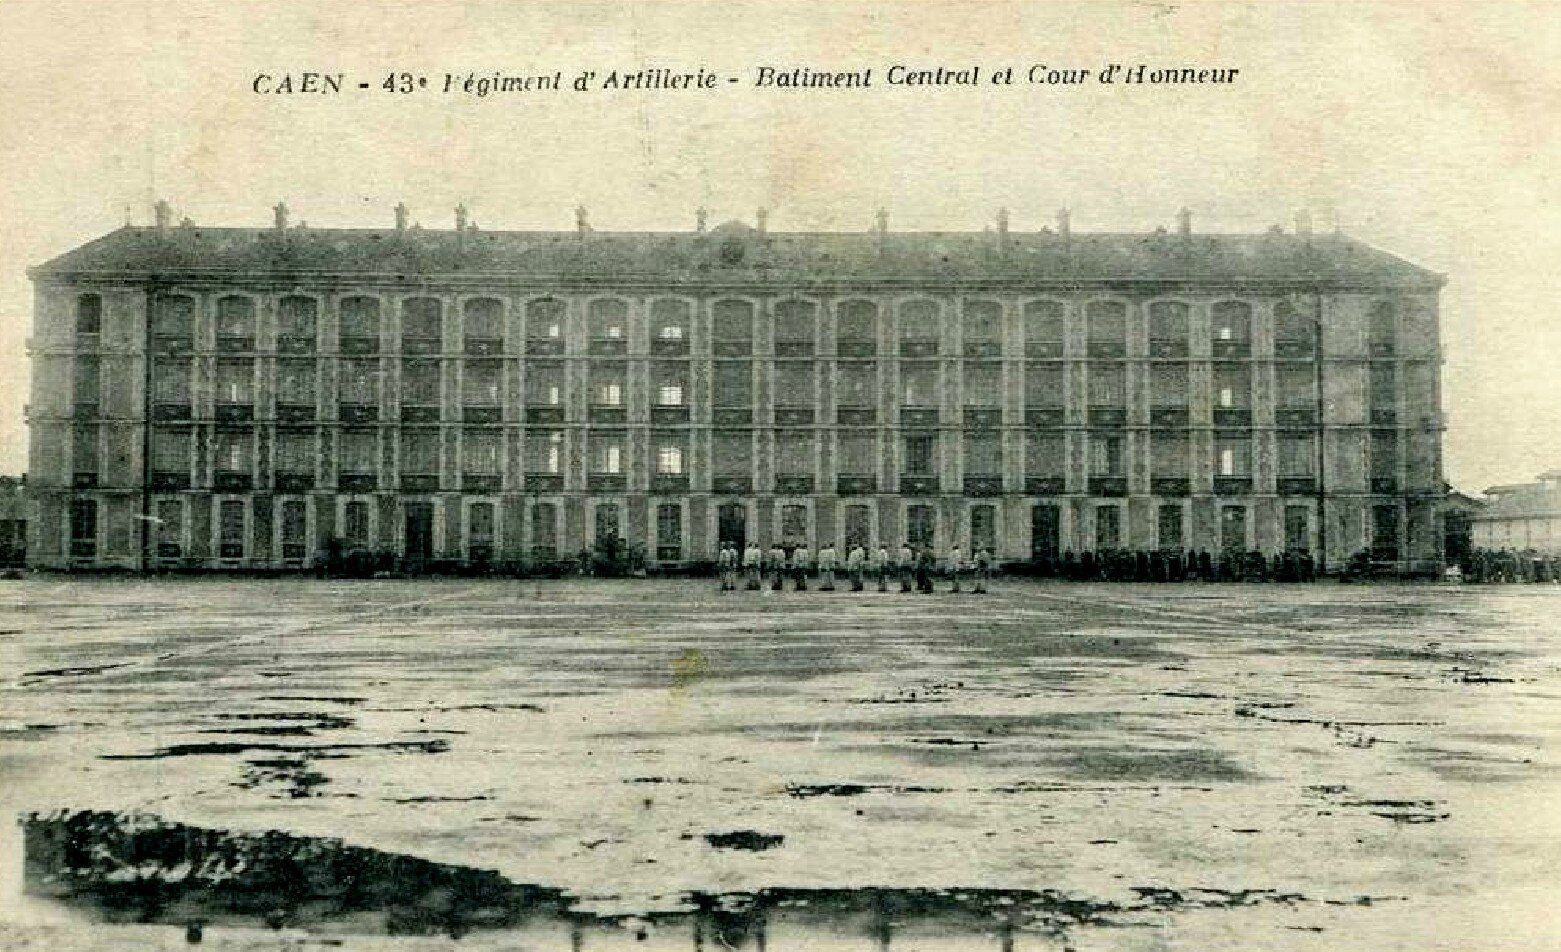 Caen 14-18, Quartier d'artillerie Claude Decaen